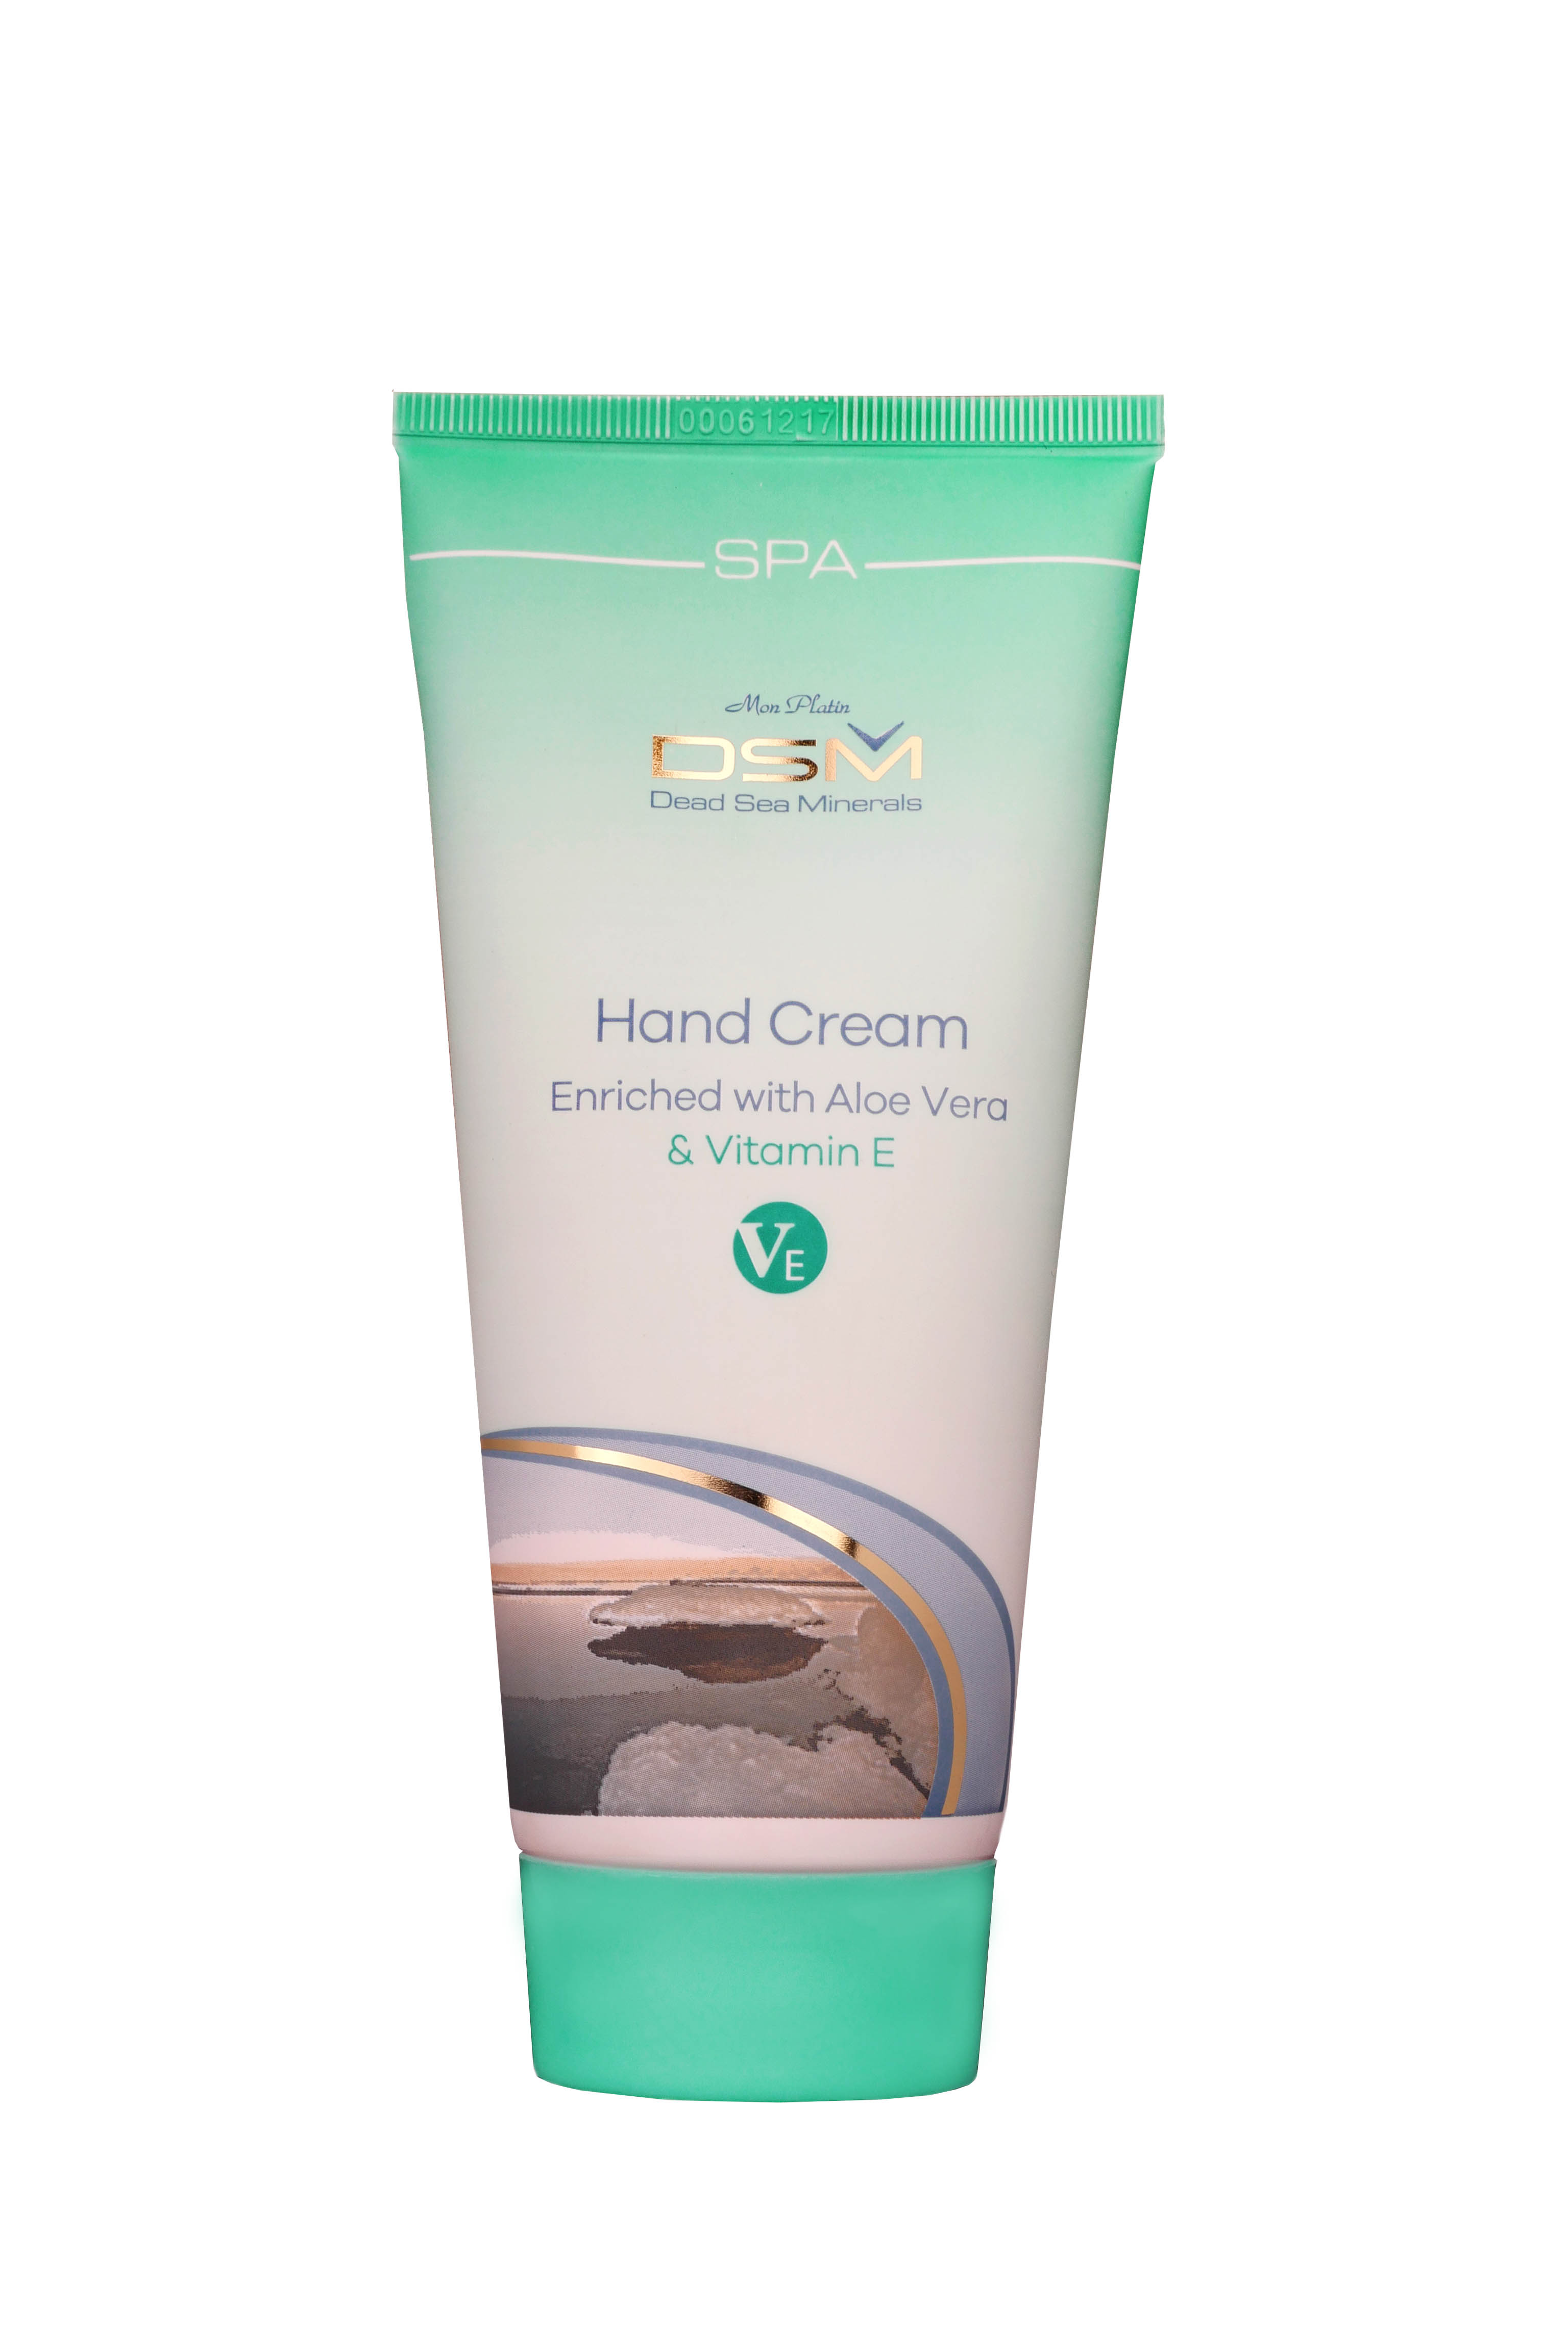 Hand cream with Aloe Vera & Vitamin E